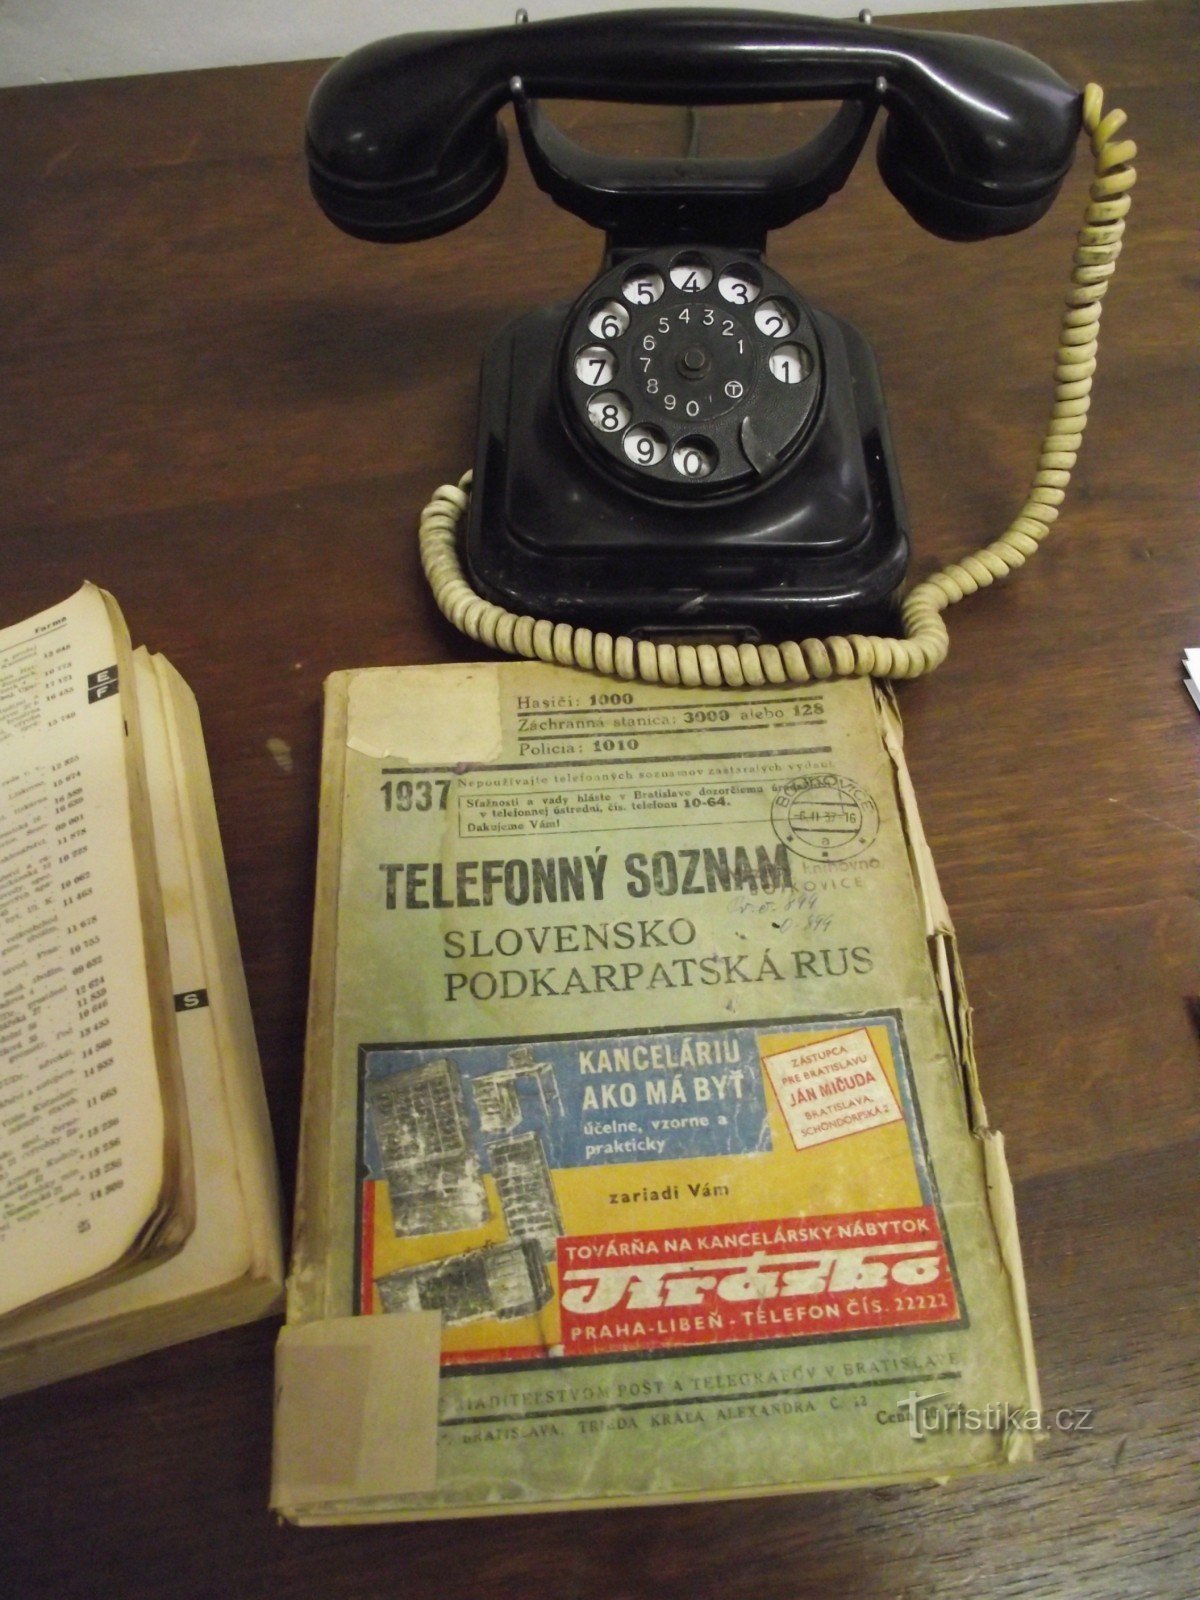 uit de tentoonstelling over de geschiedenis van mobiele telefoons